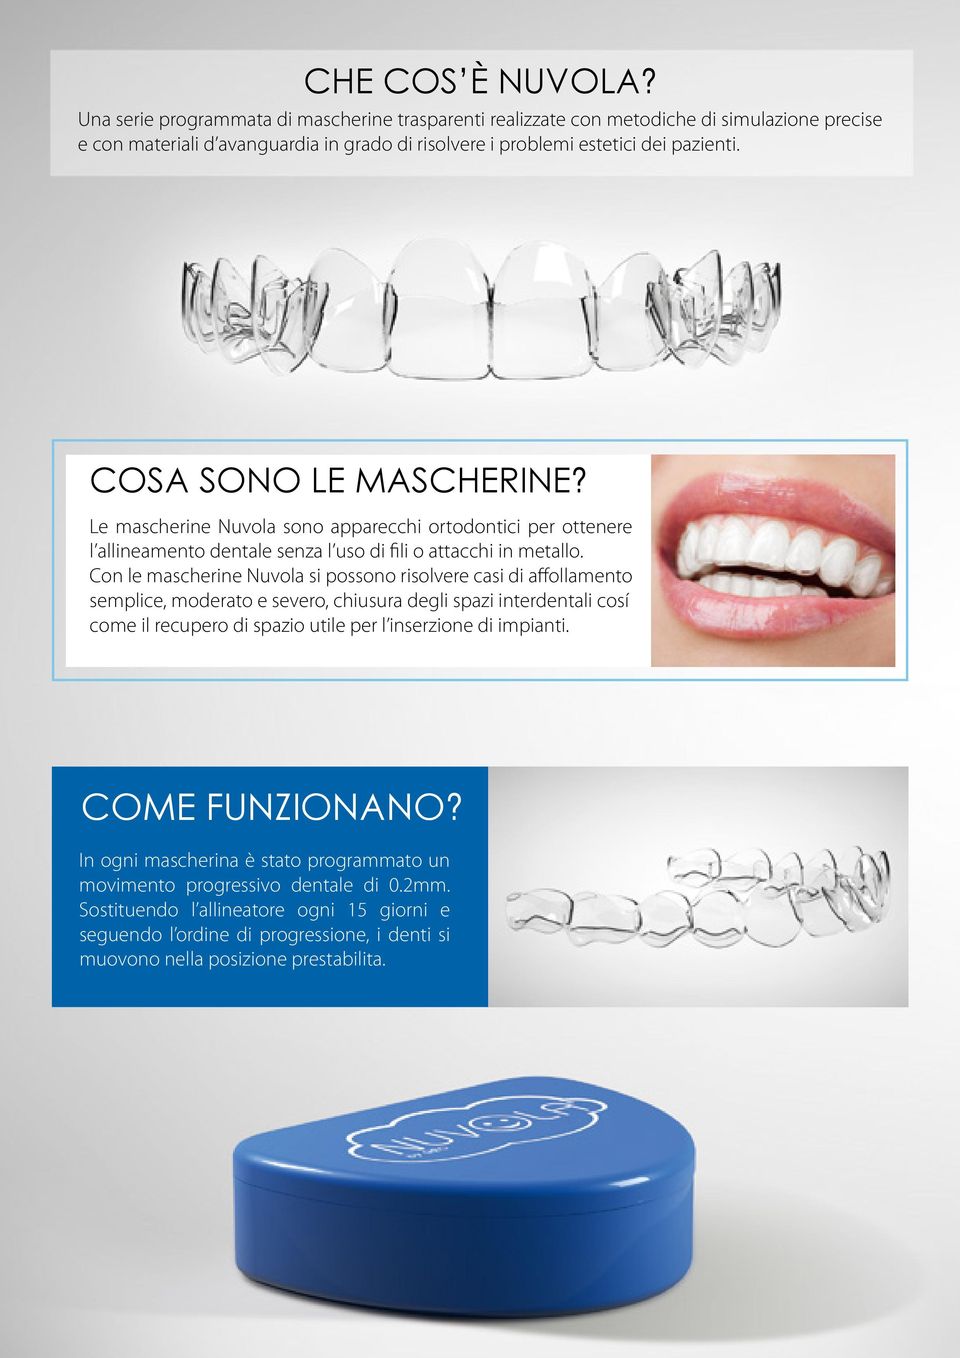 COSA SONO LE MASCHERINE? Le mascherine Nuvola sono apparecchi ortodontici per ottenere l allineamento dentale senza l uso di fili o attacchi in metallo.